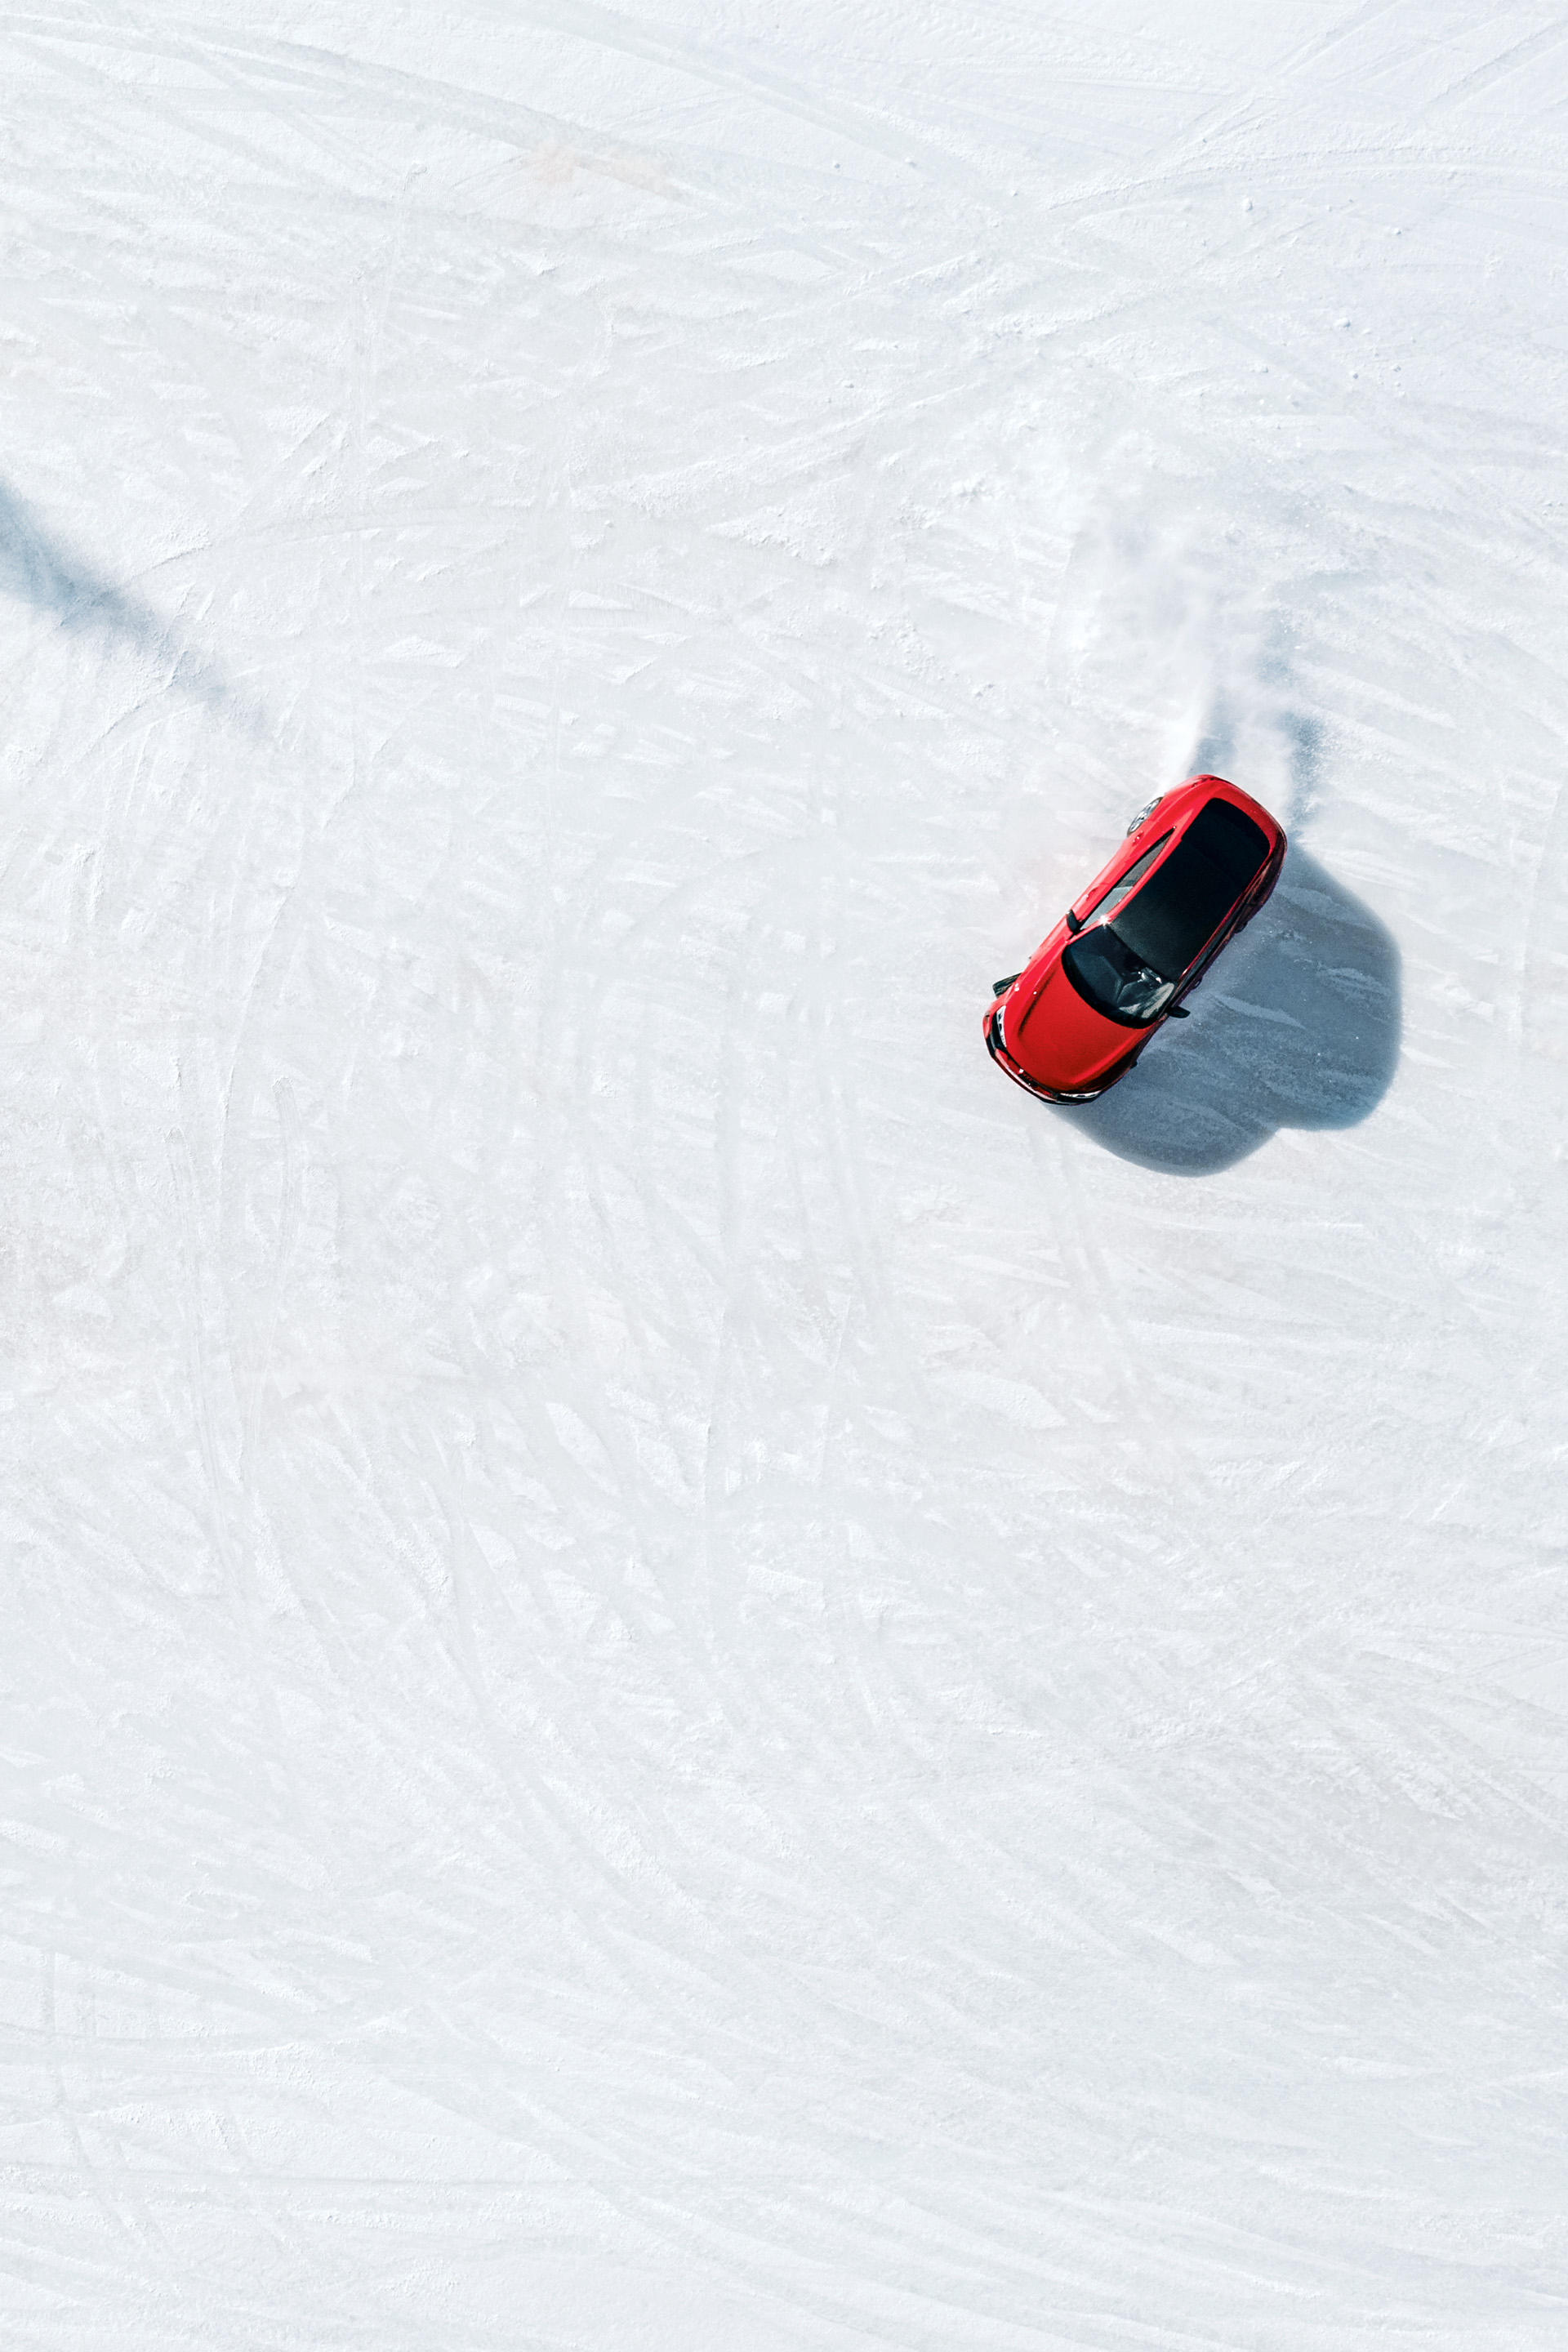 De Audi RS e-tron GT vanuit een drone gefotografeerd.